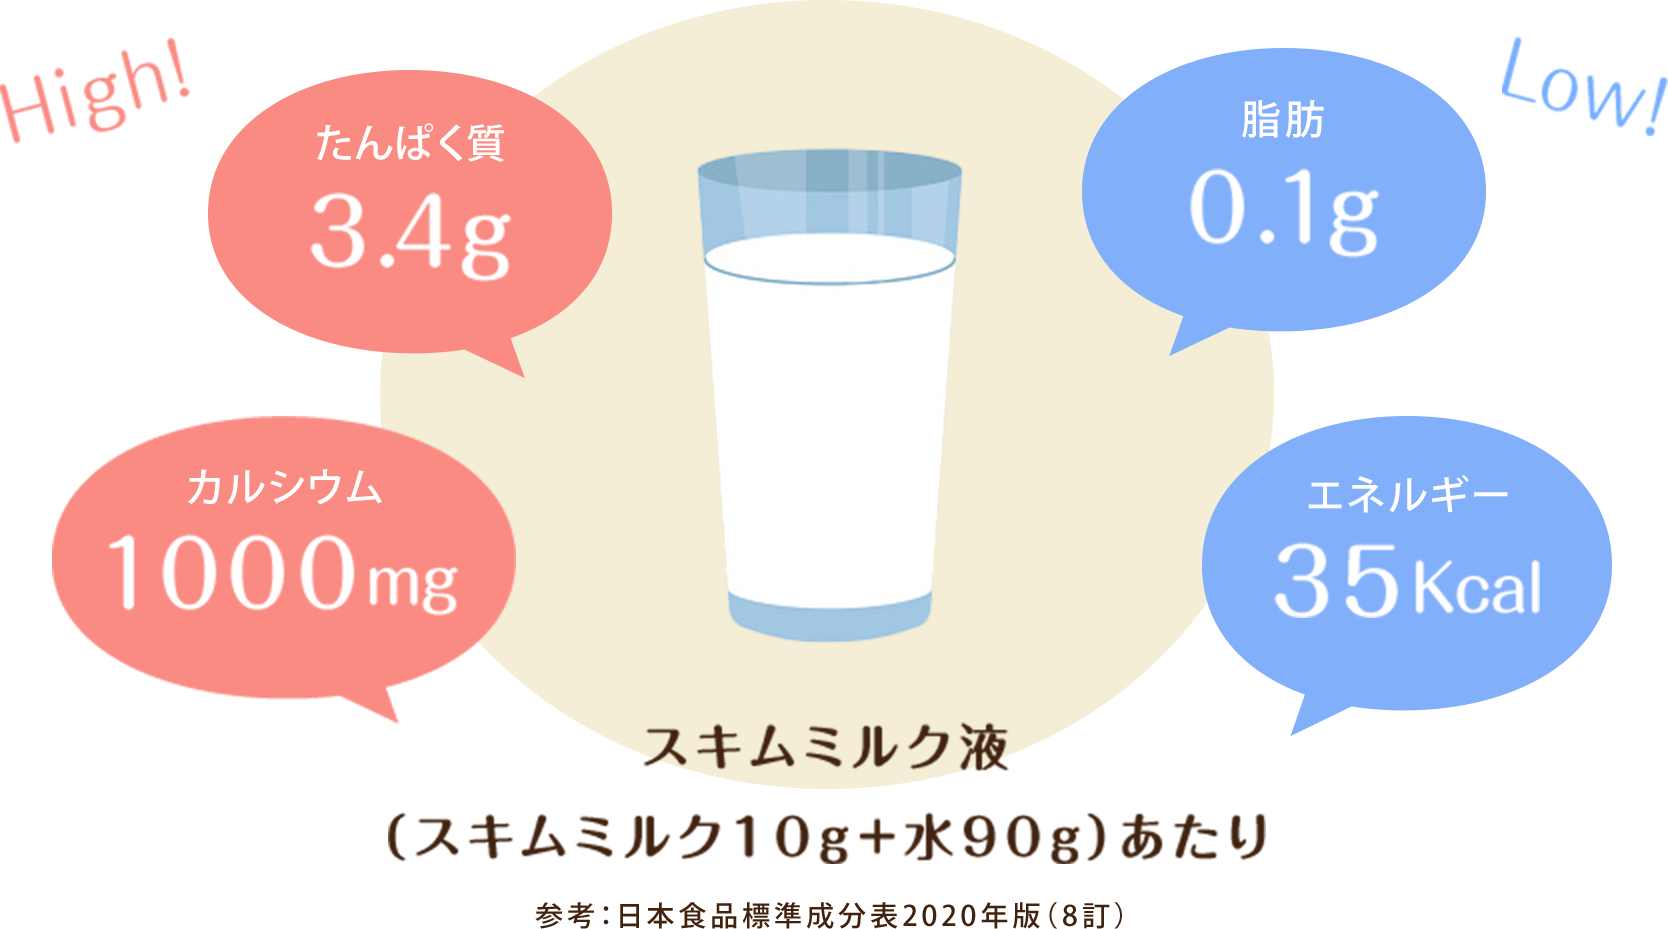 スキムミルク液の栄養価